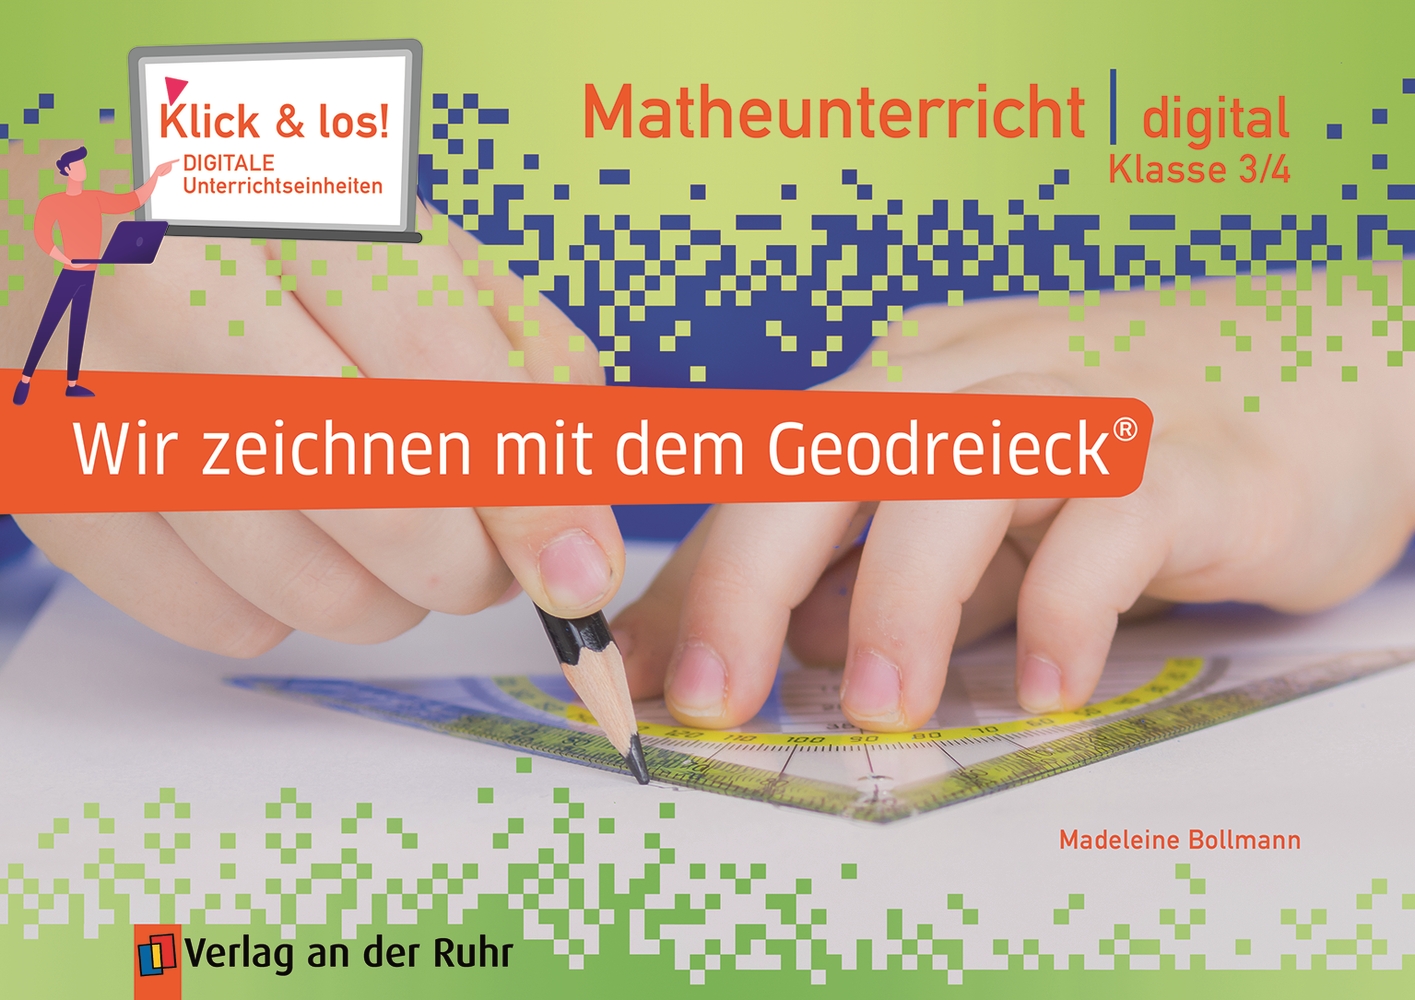 Wir zeichnen mit dem Geodreieck® - Matheunterricht digital – Klasse 3/4 - Pro-Lizenz - Online